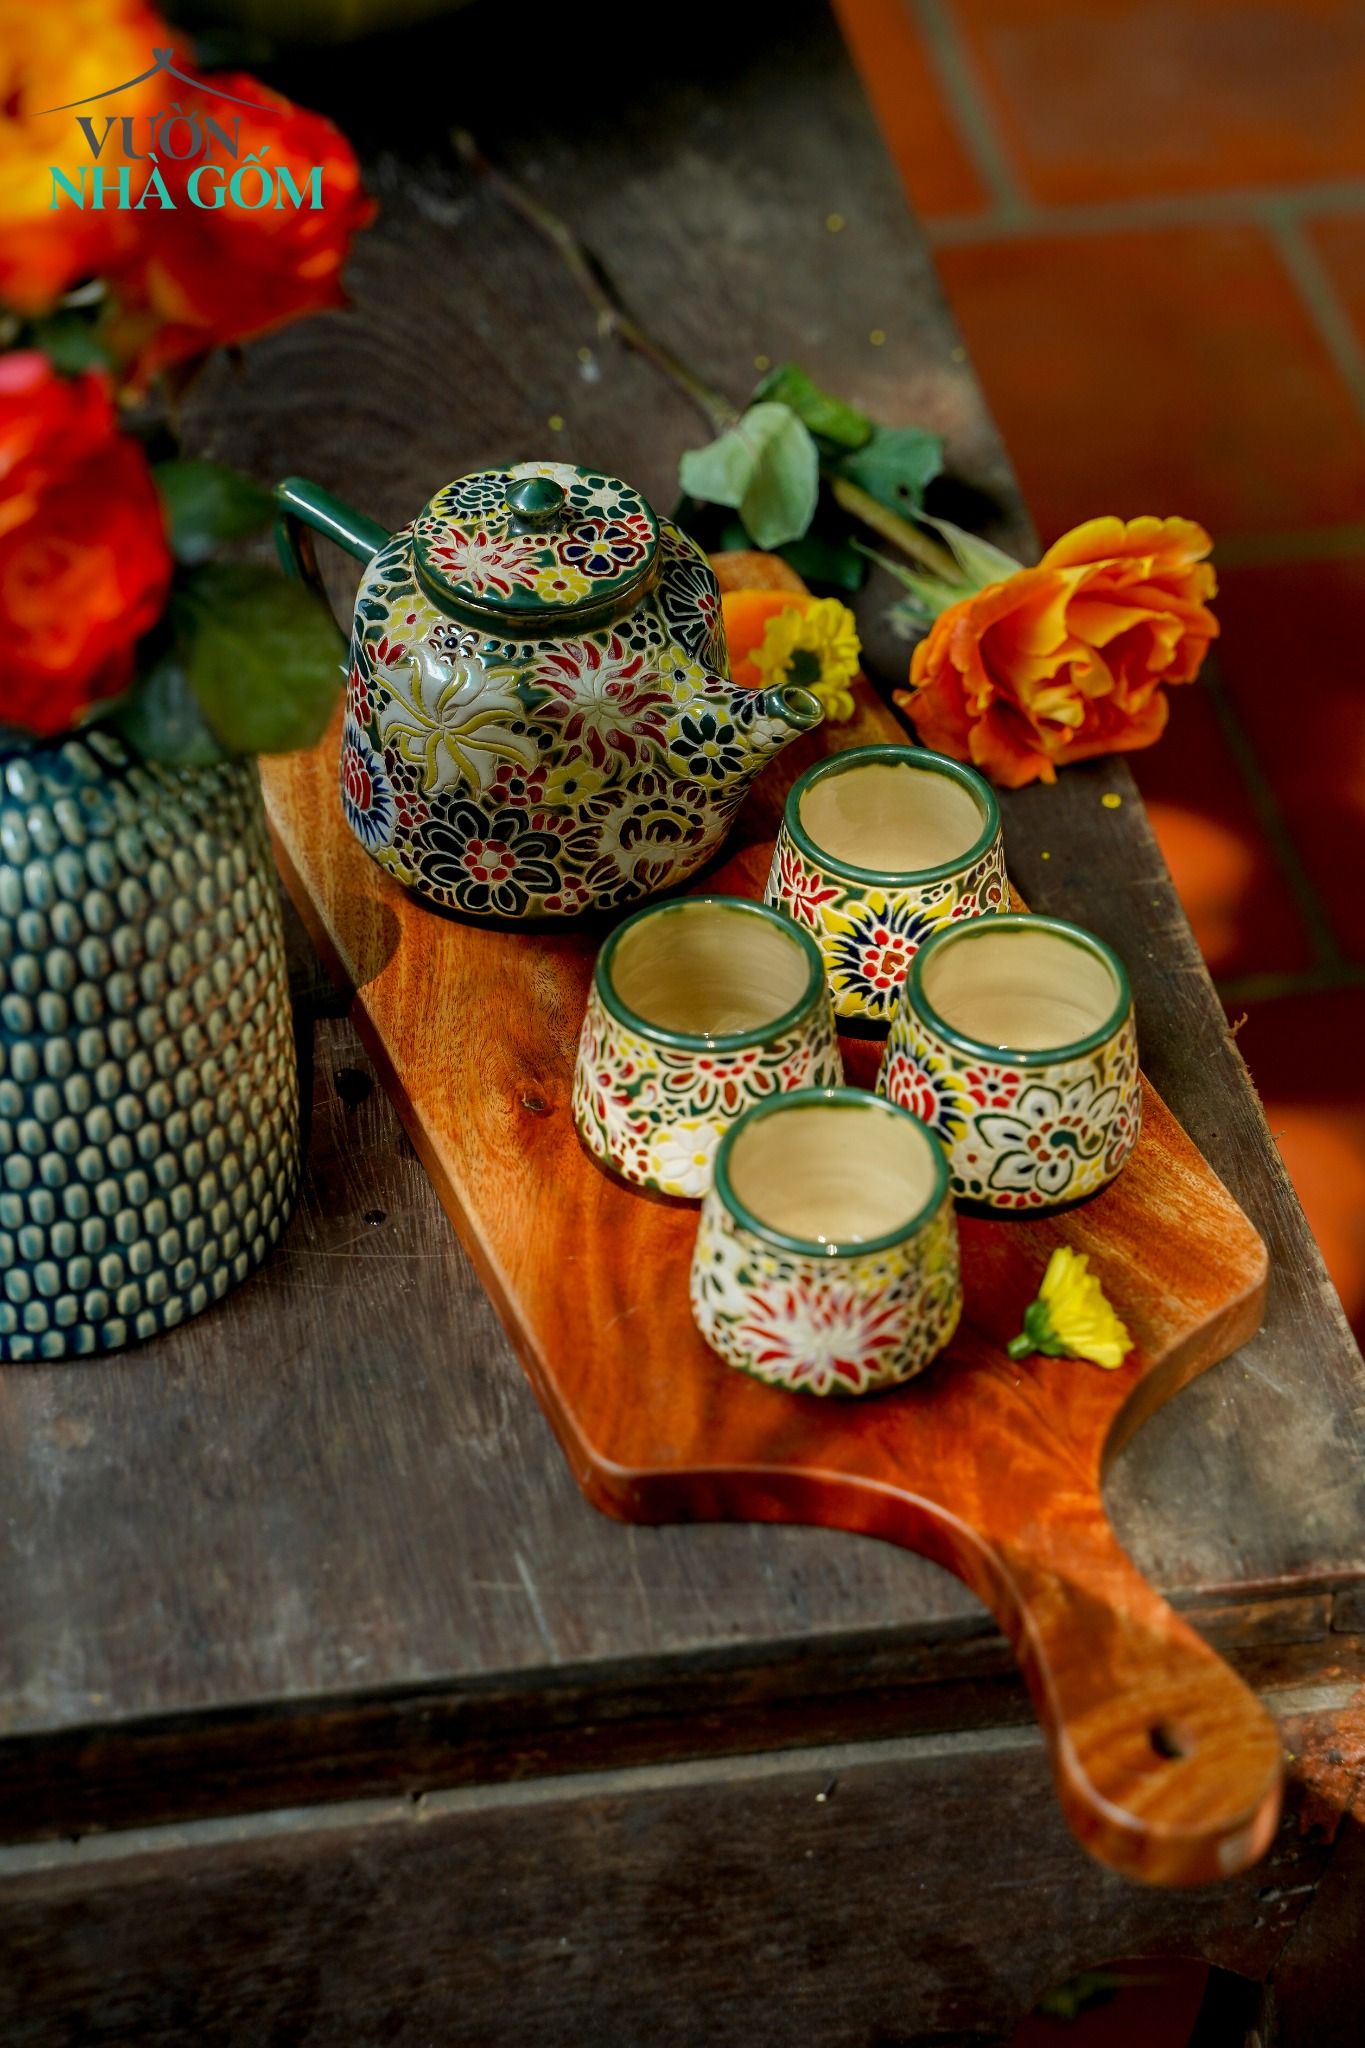  Bộ bình trà bách hoa, sản phẩm độc bản, nghệ nhân Dương Minh Tâm 